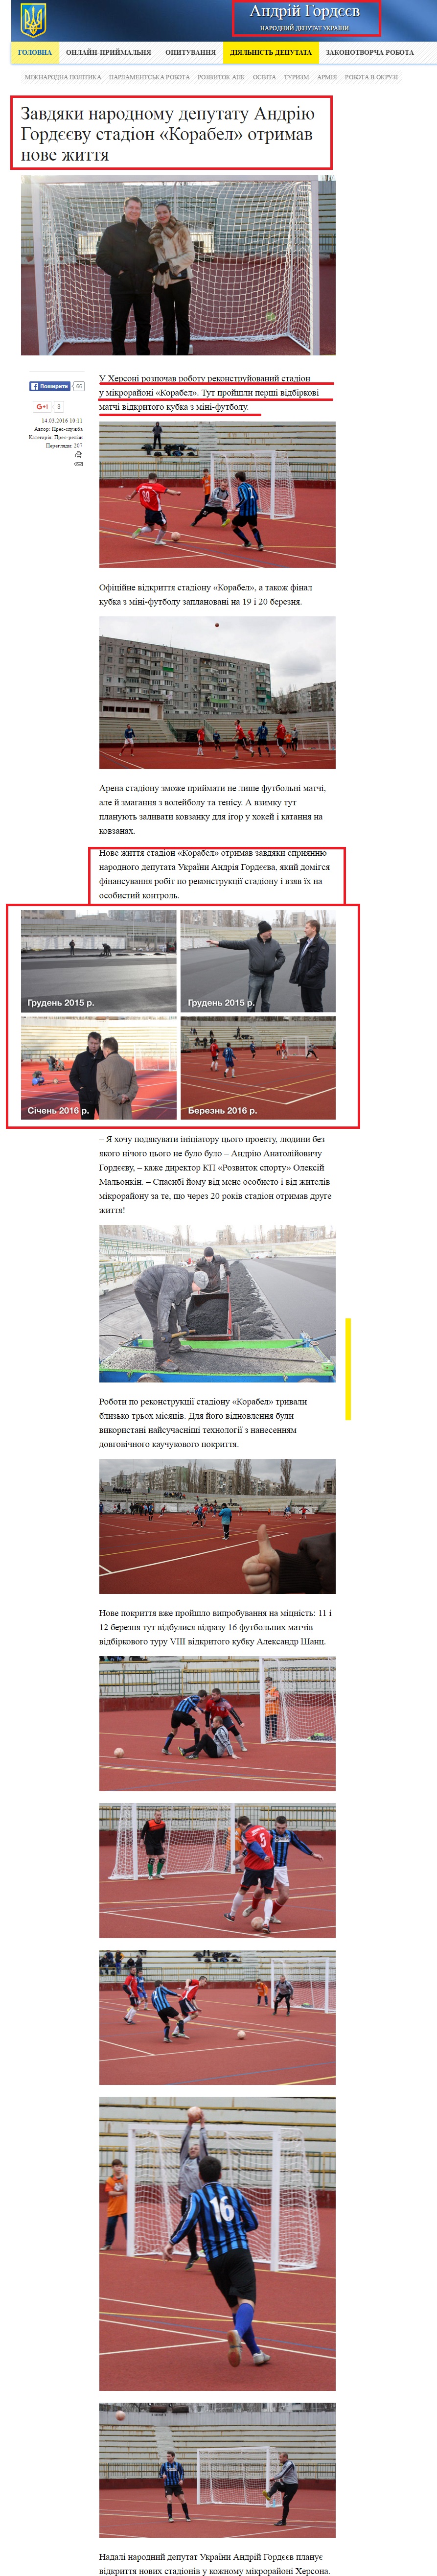 http://gordeev.org.ua/press/release/115-zavdiaky-narodnomu-deputatu-andriiu-hordieievu-stadion-korabel-otrymav-nove-zhyttia